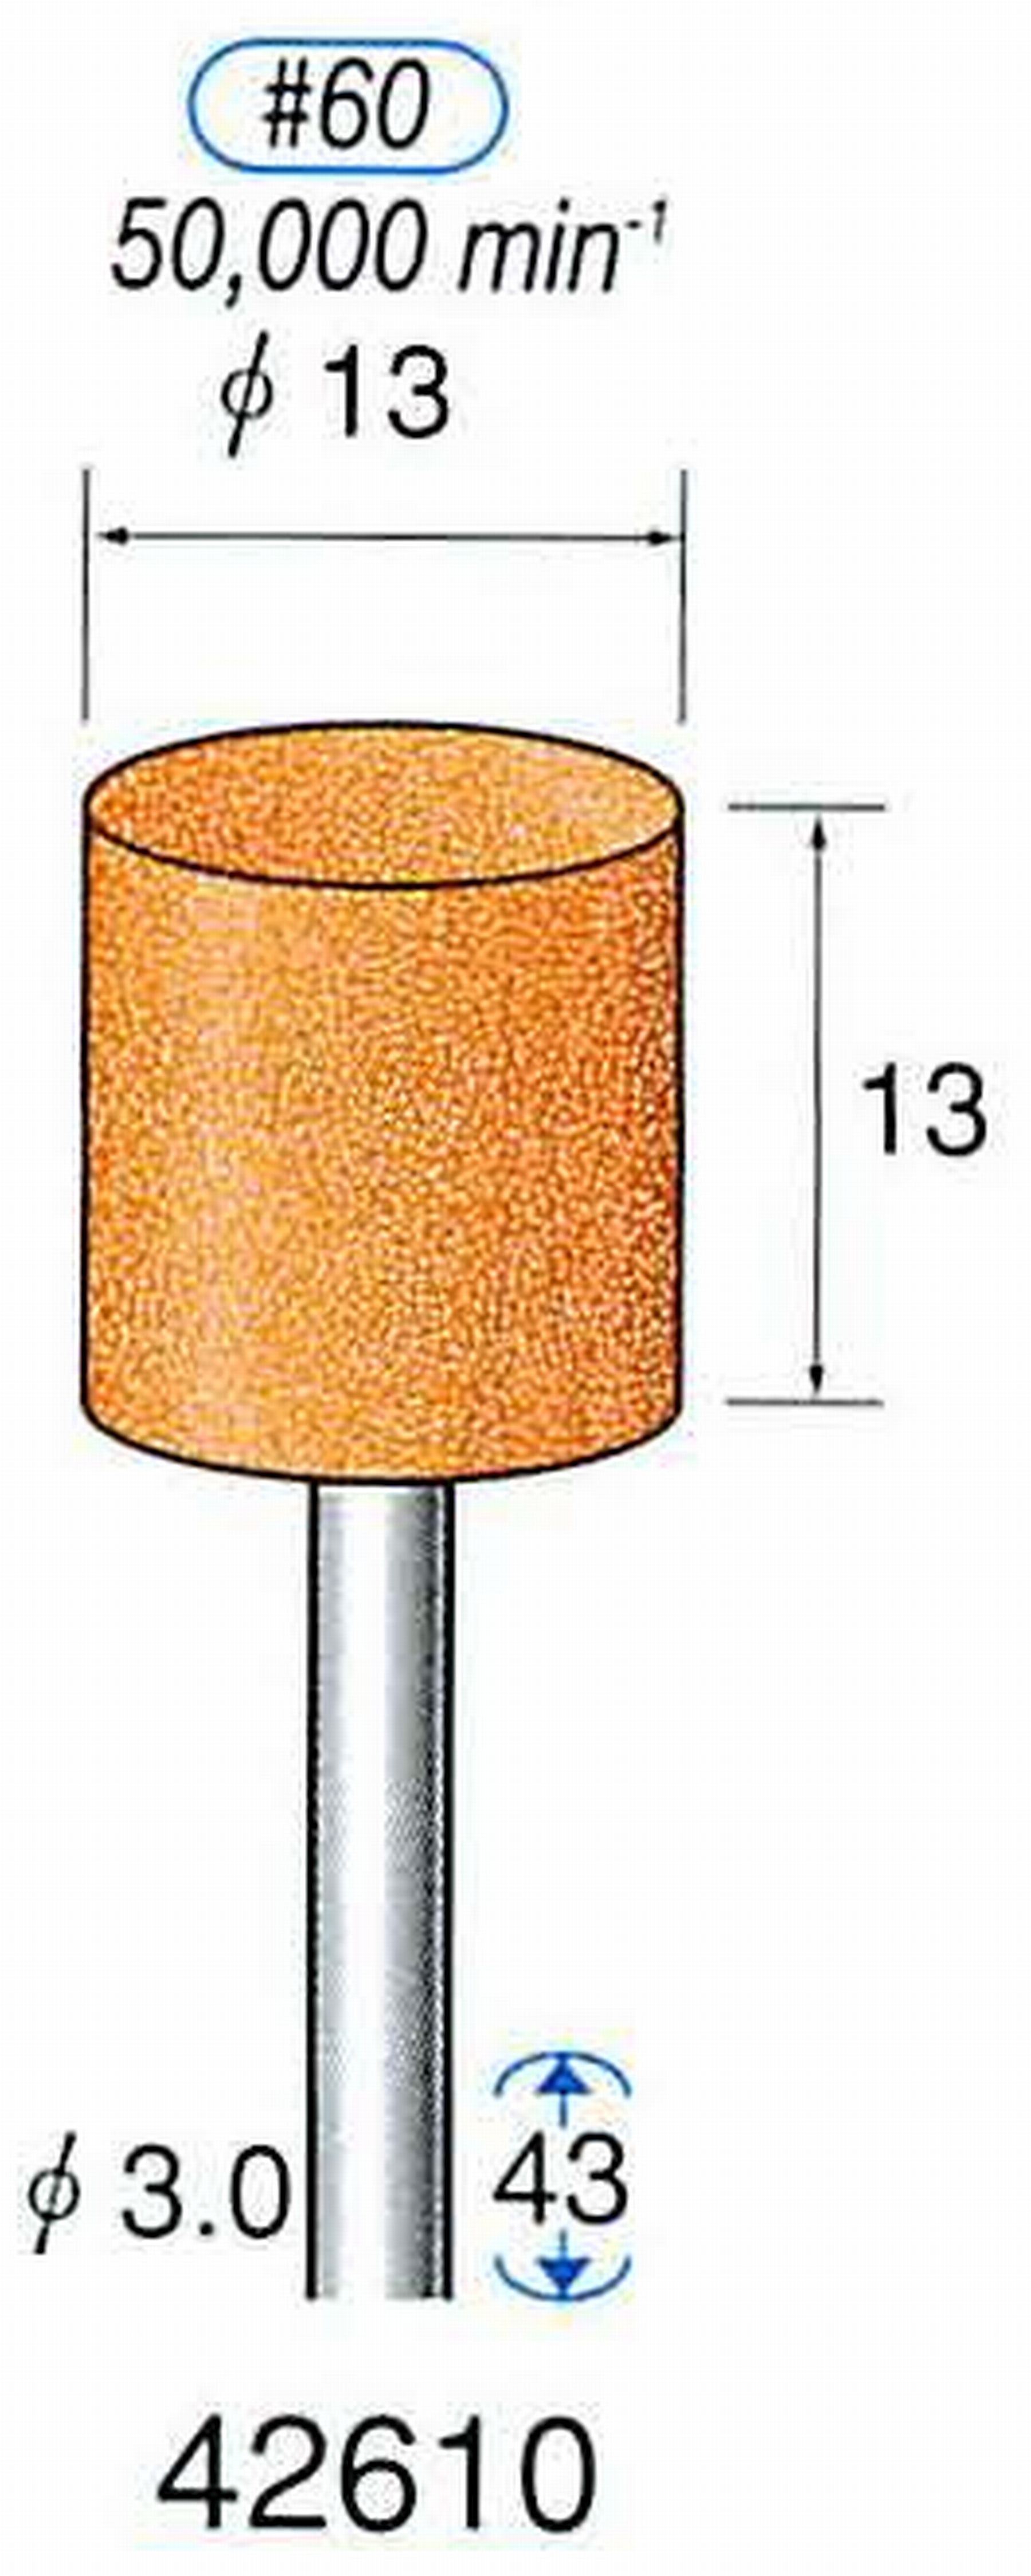 ナカニシ/NAKANISHI 軸付砥石(WA砥粒) 一般研削用 軸径(シャンク) φ3.0mm 42610